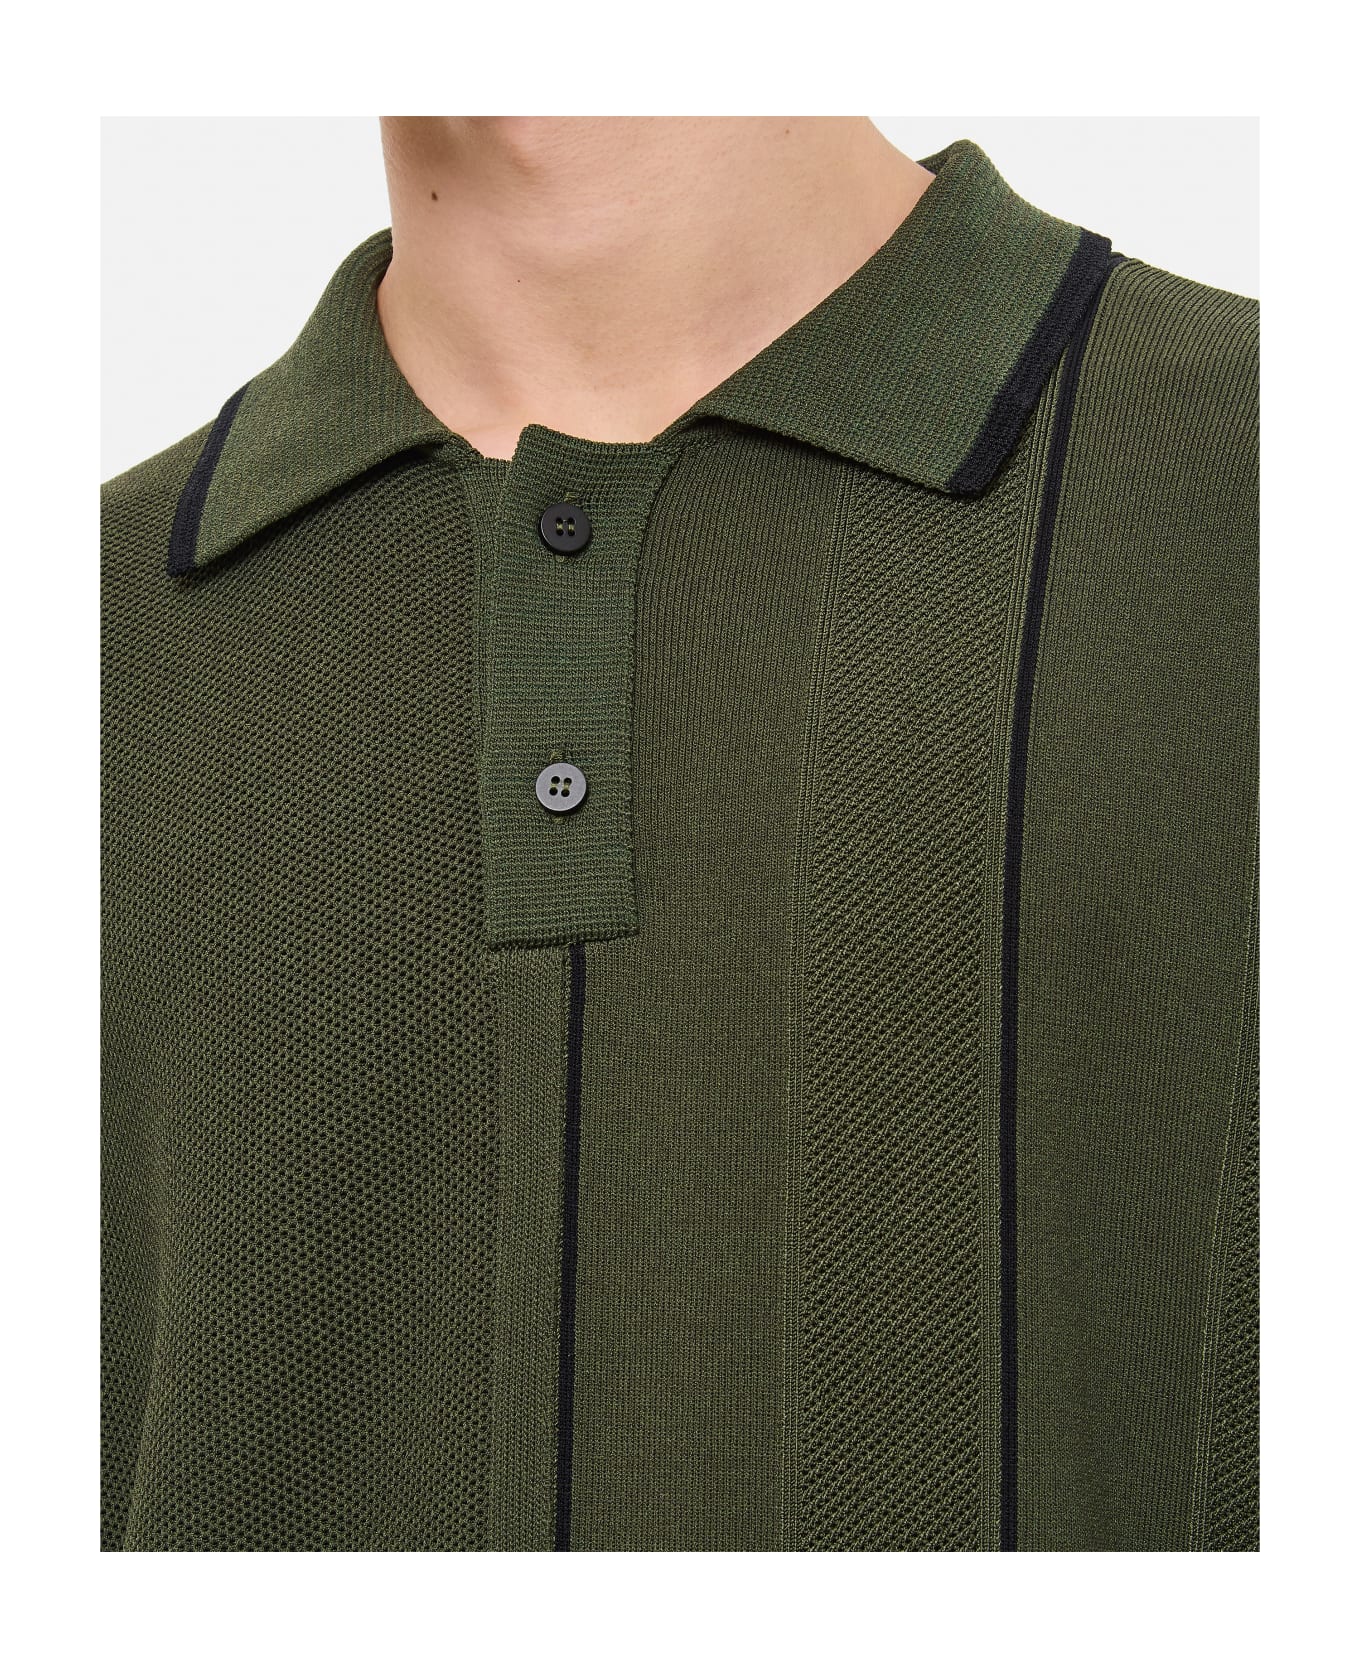 Jacquemus Juego Polo Shirt - Green